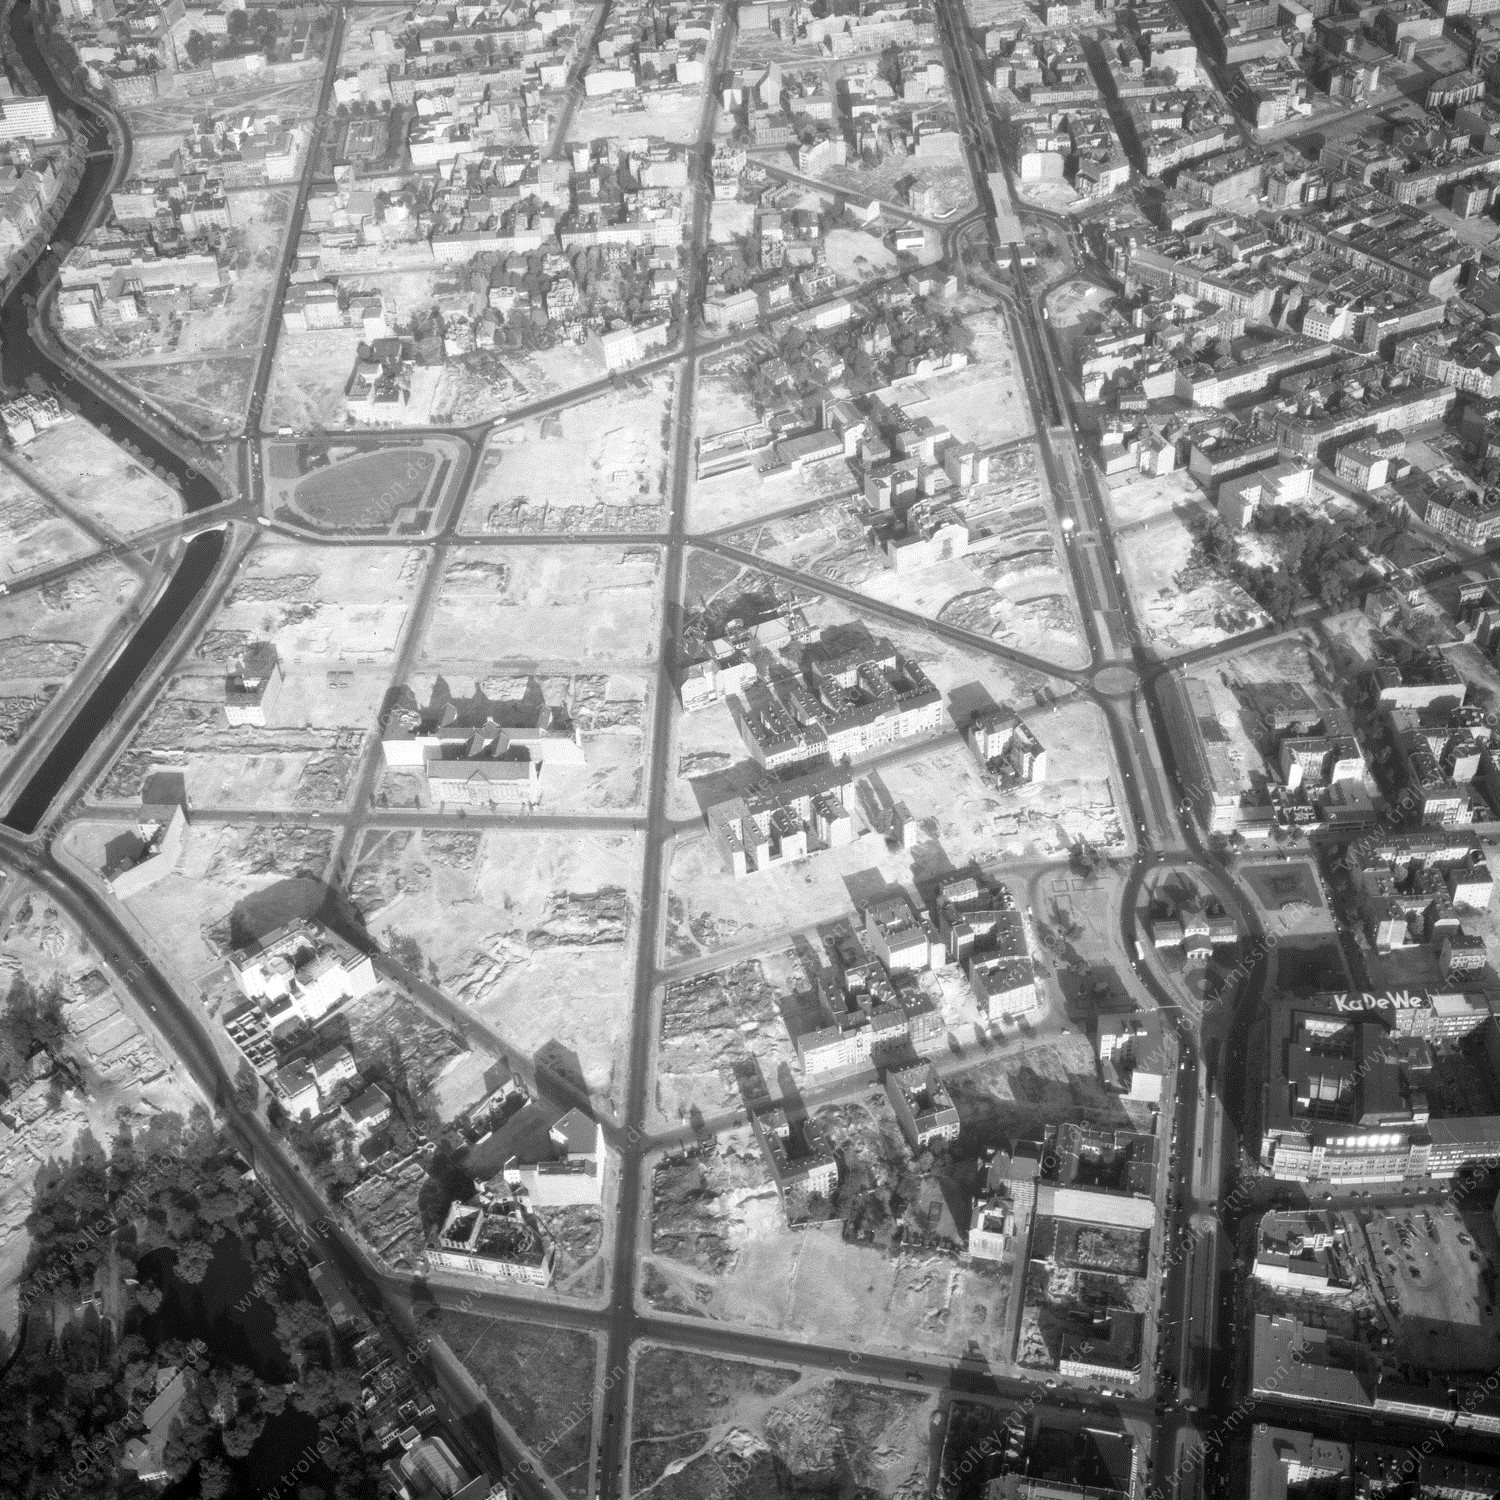 Alte Fotos und Luftbilder von Berlin - Luftbildaufnahme Nr. 11 - Historische Luftaufnahmen von West-Berlin aus dem Jahr 1954 - Flugstrecke Foxtrot